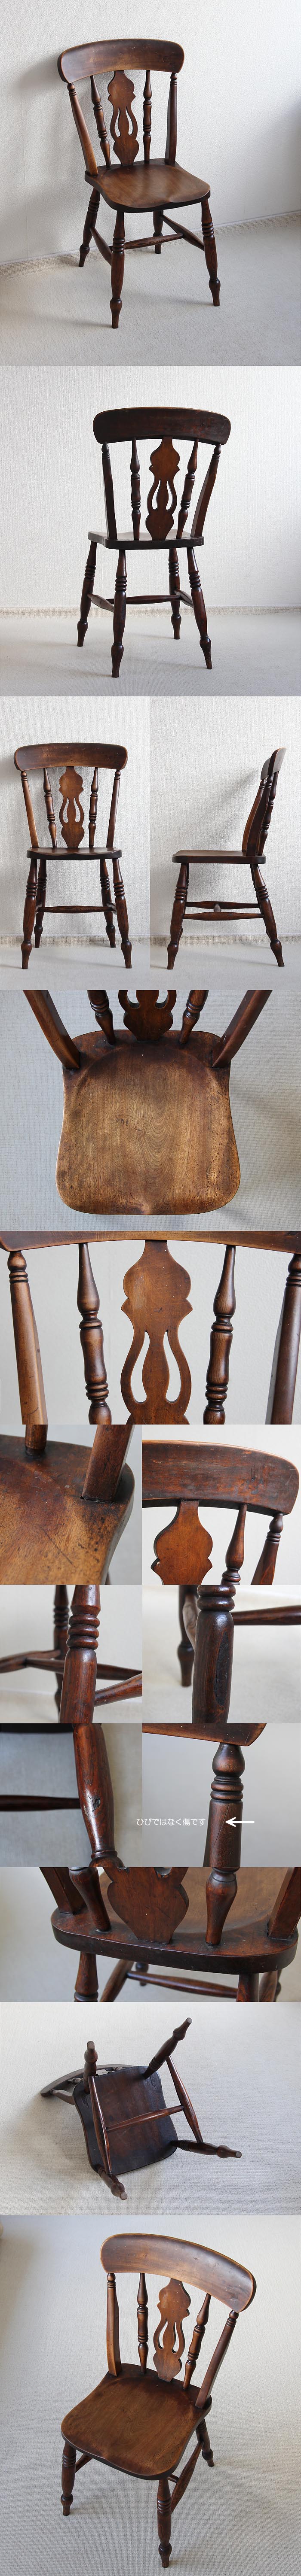 イギリス アンティーク キッチンチェア 古木 木製椅子 家具 インテリア「一枚板座面」P-200